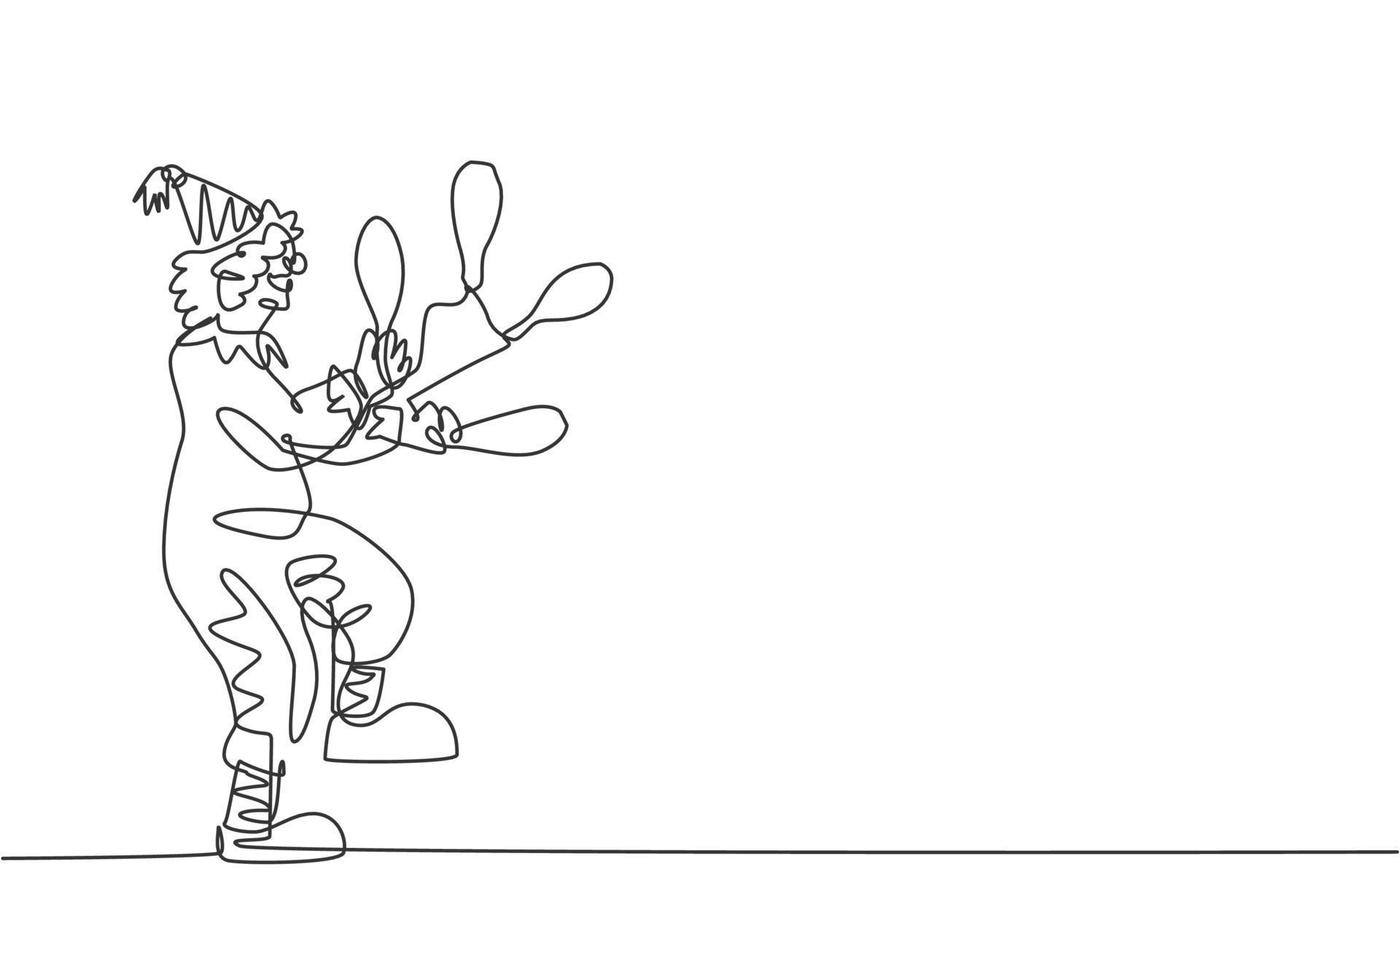 una sola línea continua dibujando un payaso macho haciendo malabares en una pierna. el payaso que jugaba fue muy divertido y entretuvo a la audiencia. evento de espectáculo de circo. Ilustración de vector de diseño gráfico de dibujo de una línea.